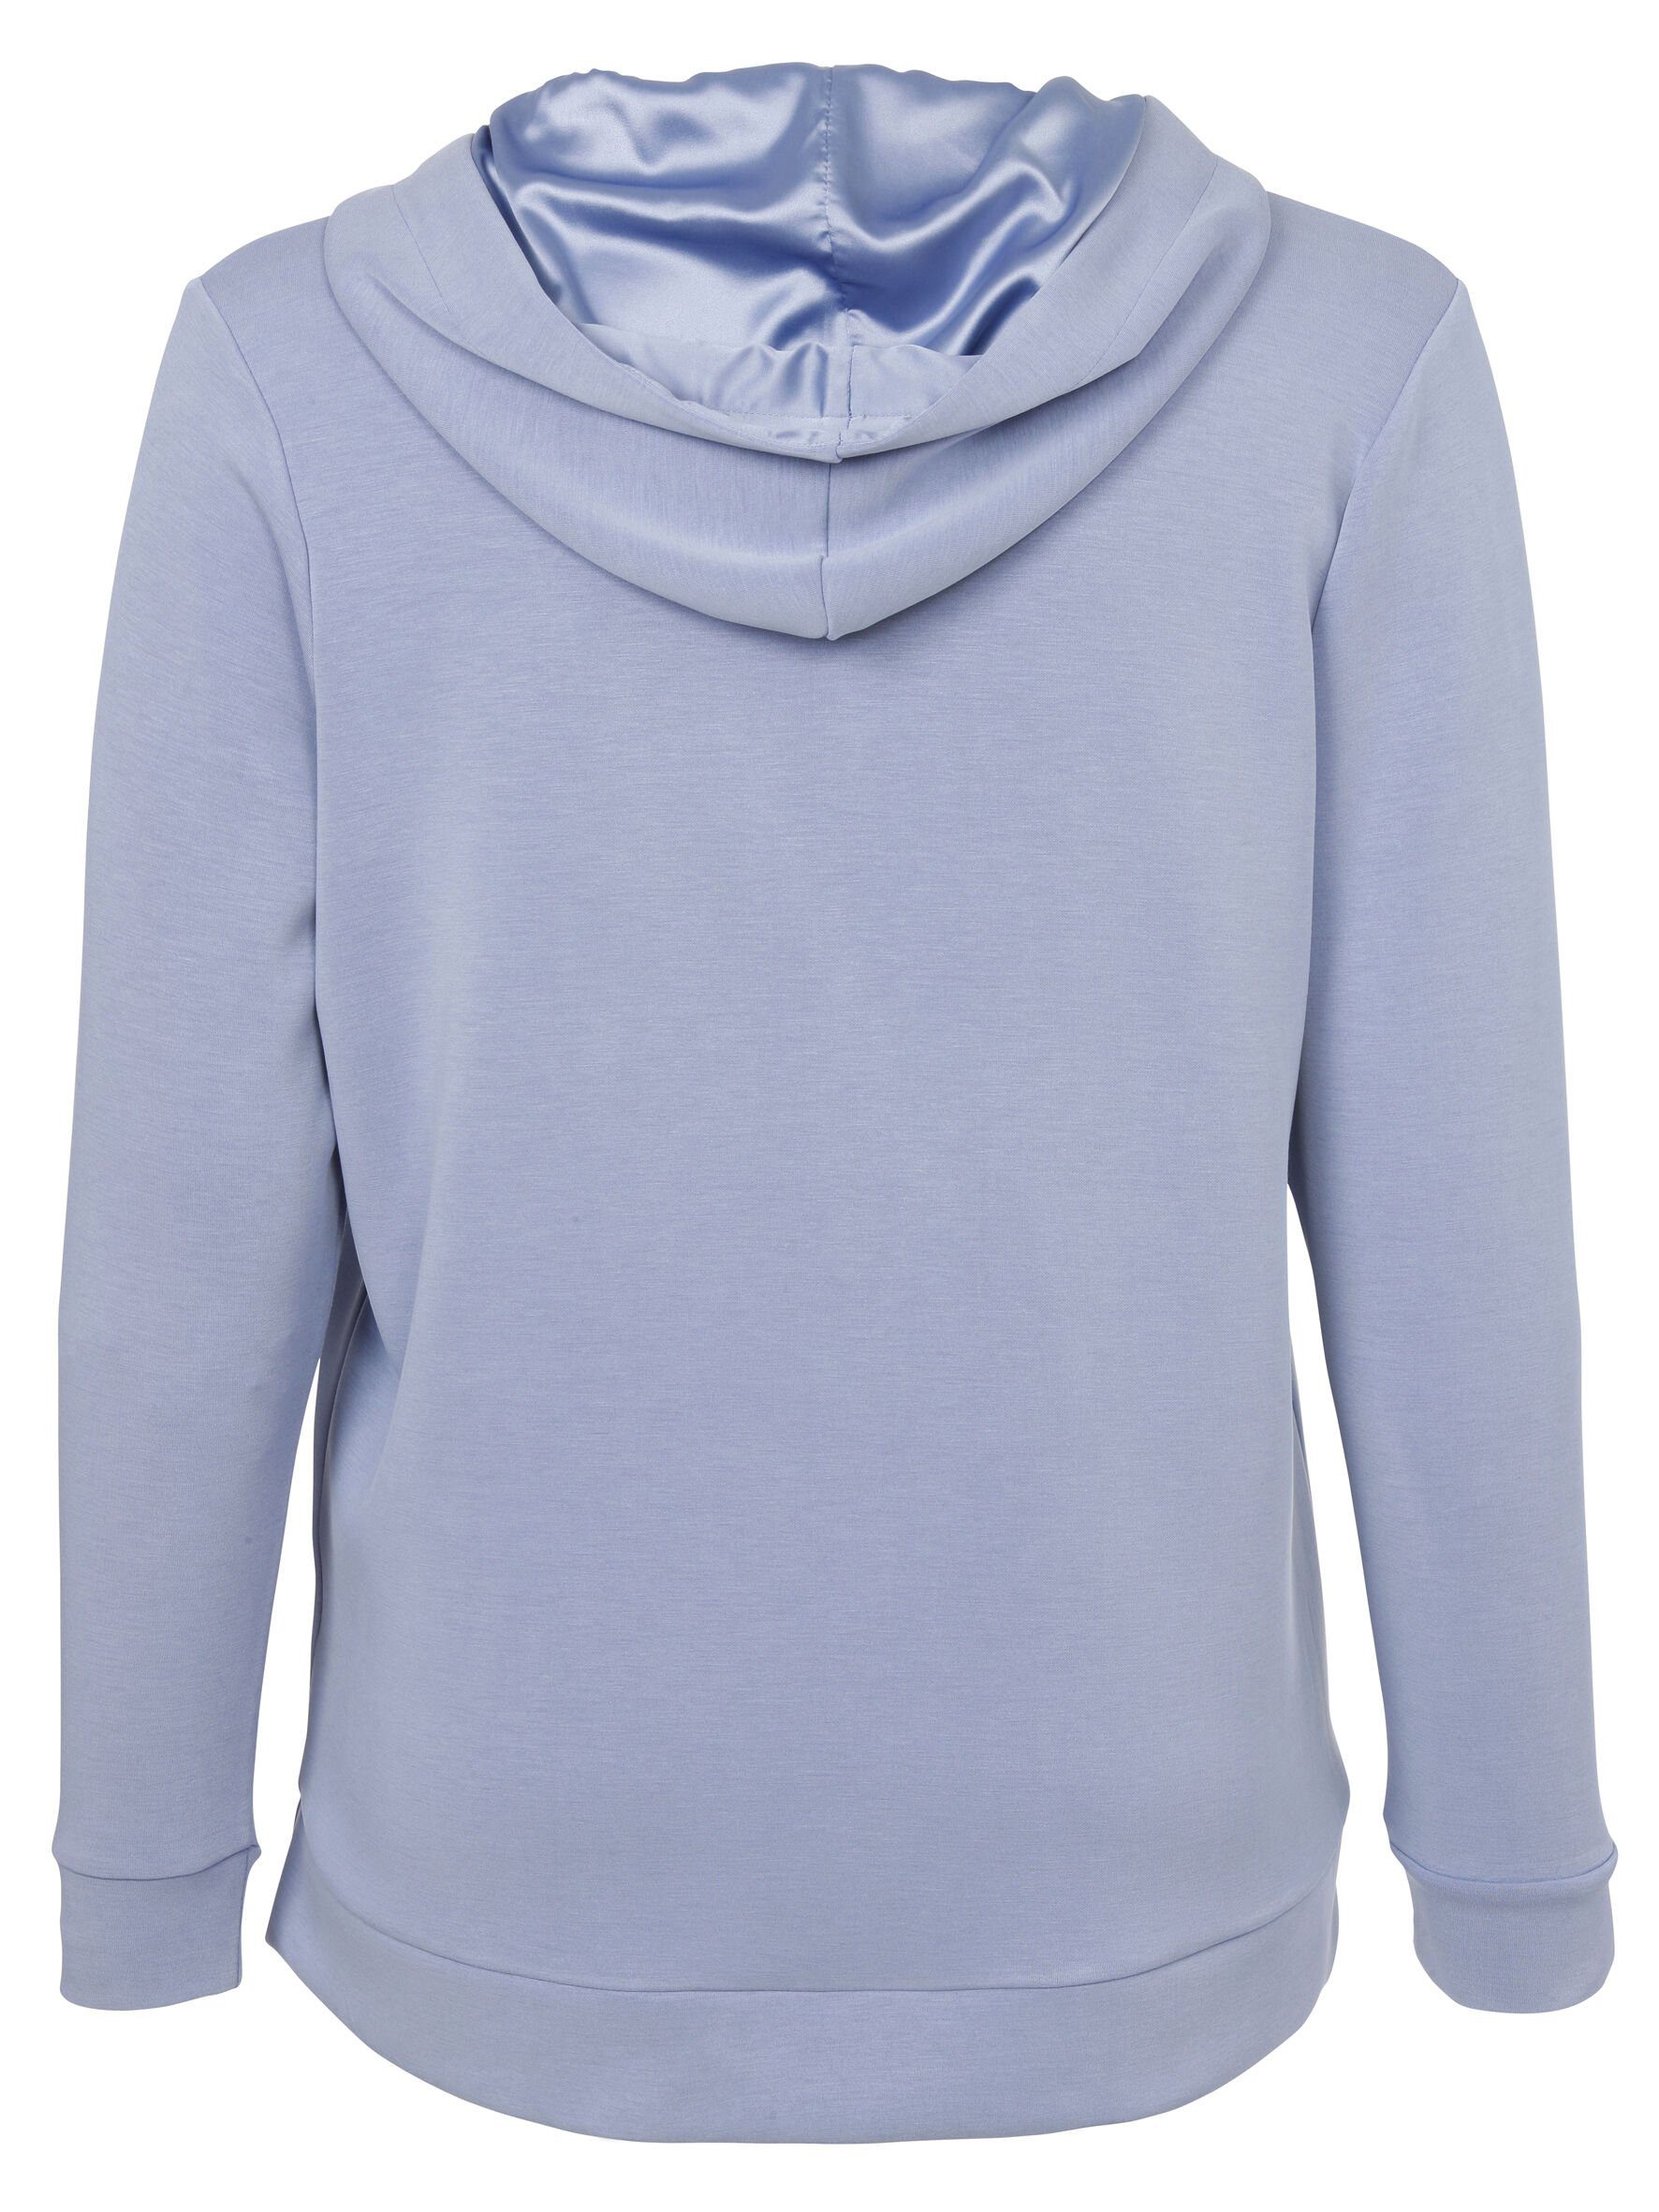 Stil Sportives hochwertigen APPIA Sweatshirt Sweatshirt in unifarbenem rauchblau Viskosemischung mit DUE VIA